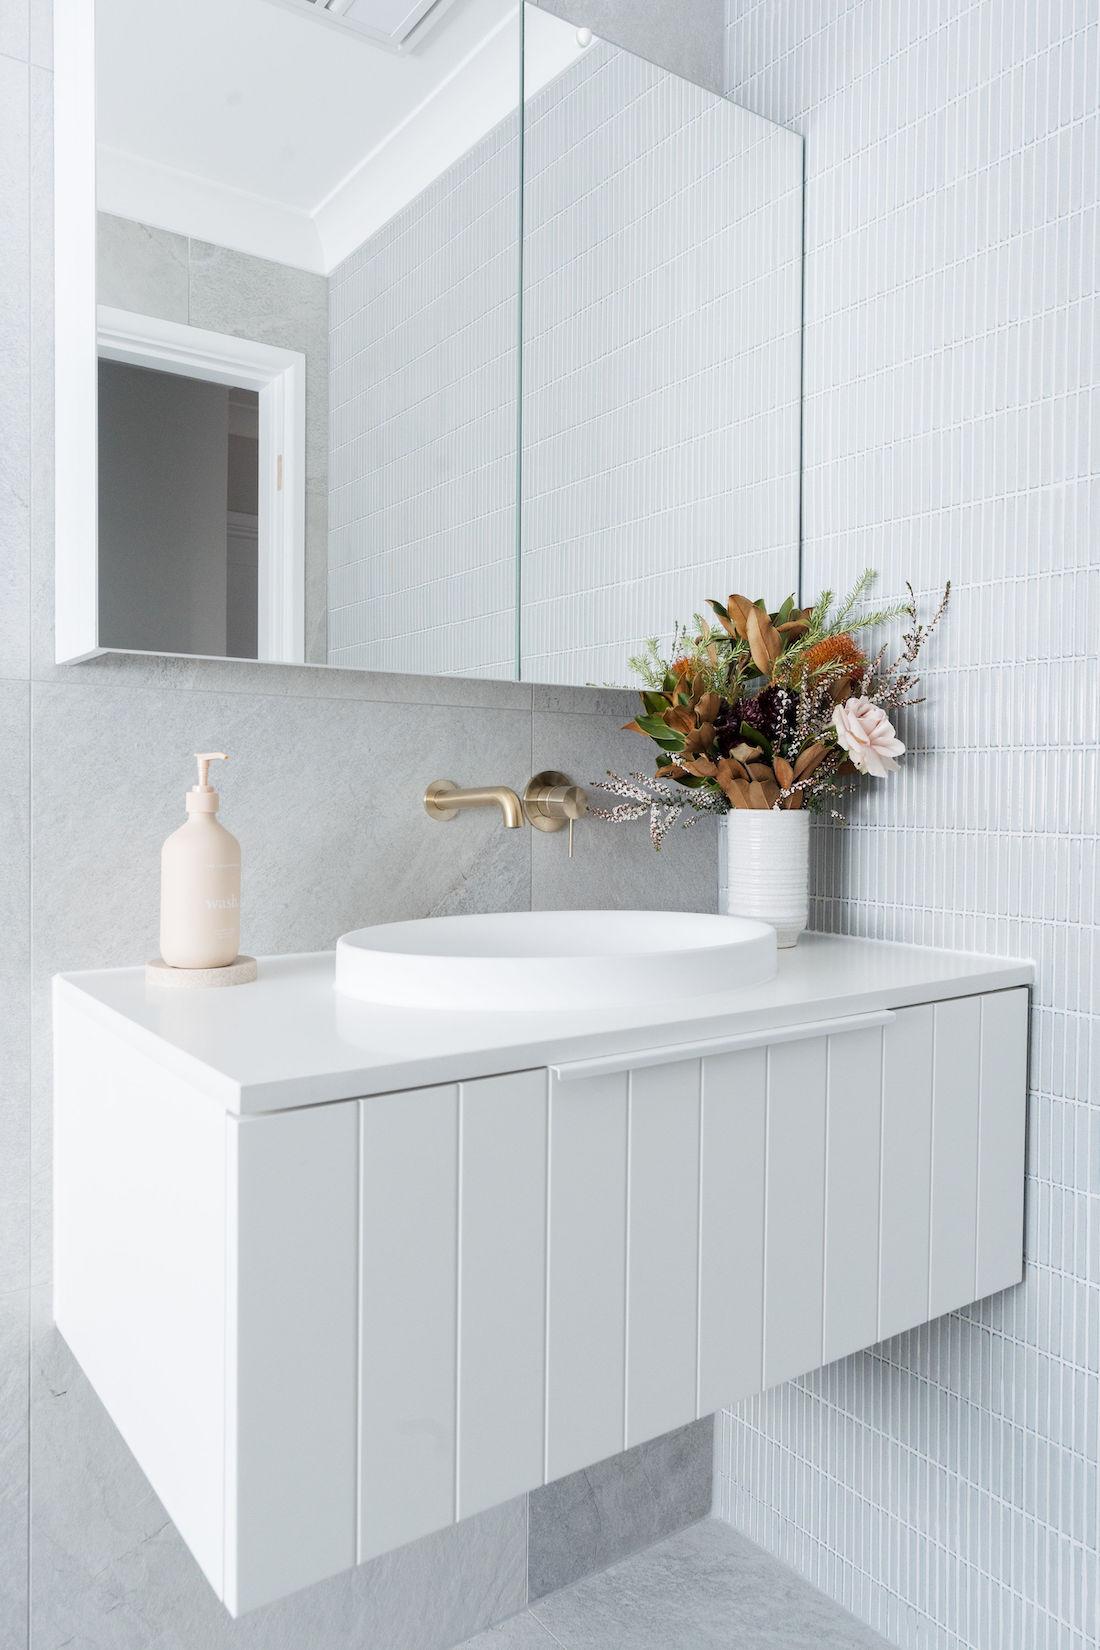 White vanity against grey stone-look tiles